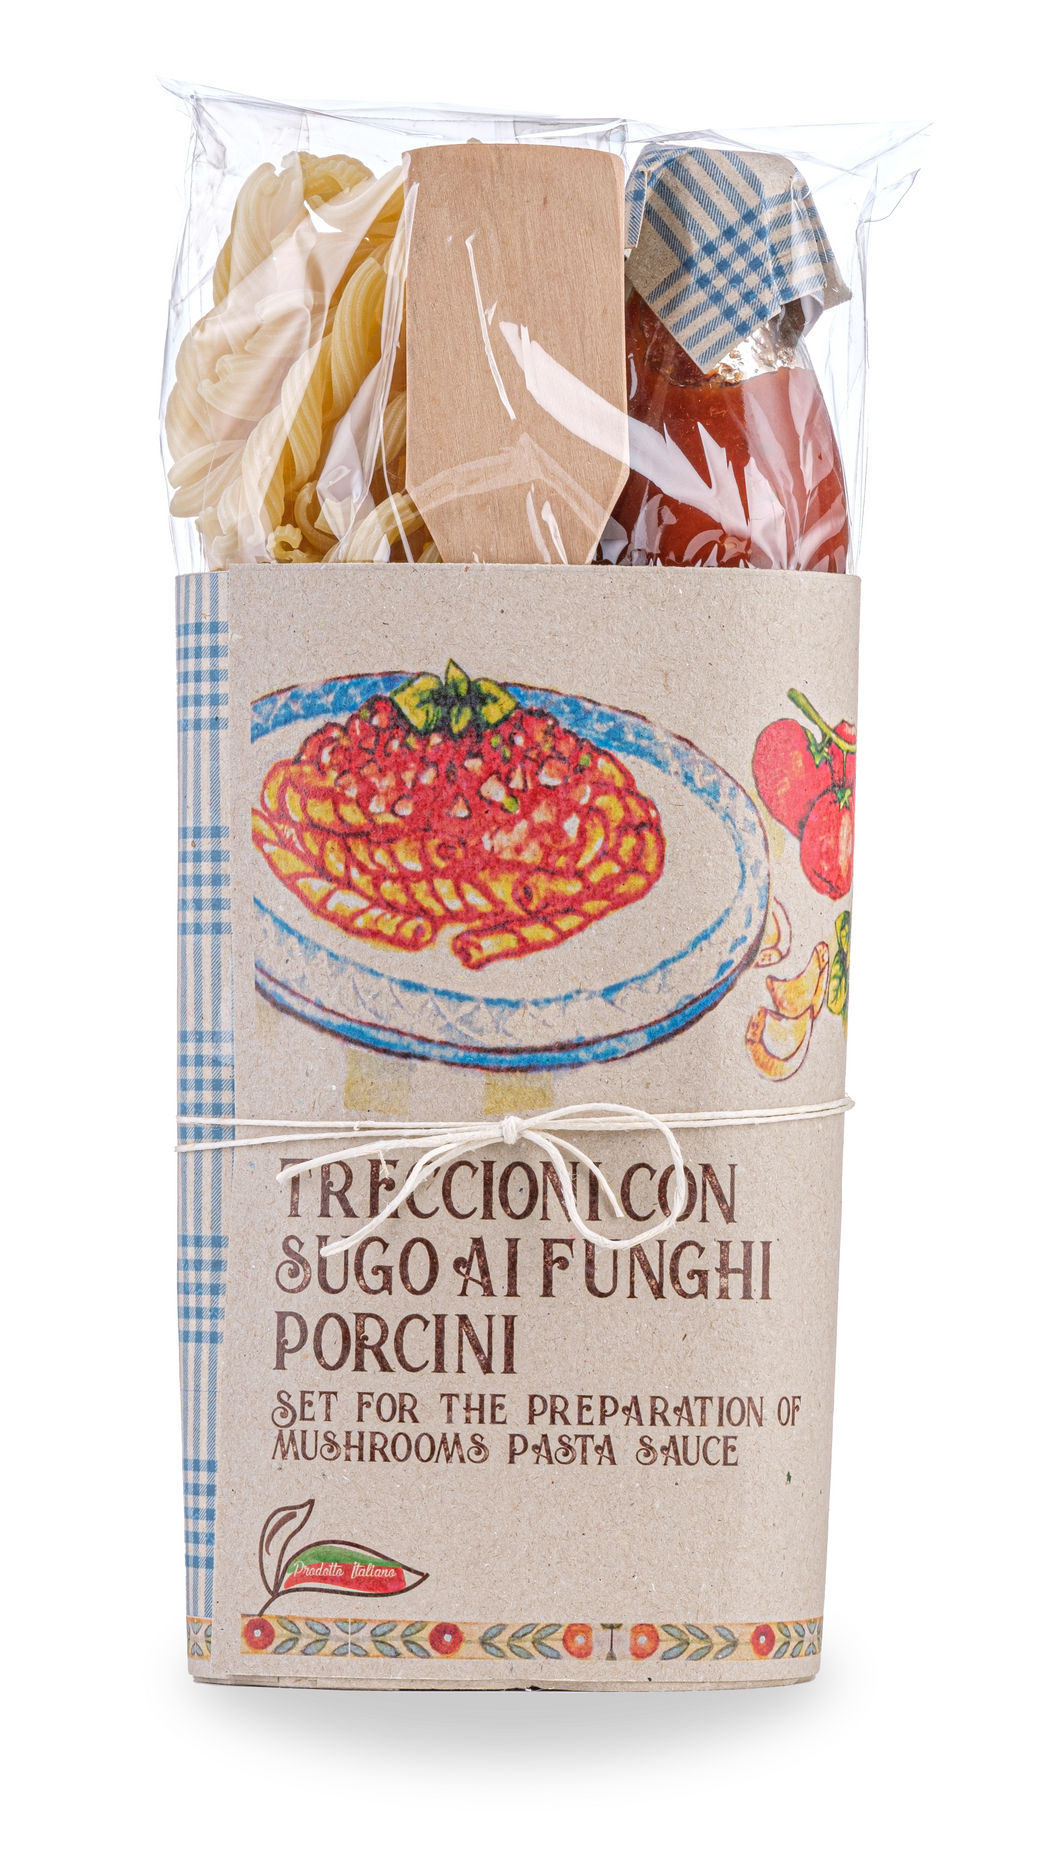 Organic Treccioni pasta Porcini Mushroom Sauce Gift Set With Wooden Spoon By Casarecci Di Calabria